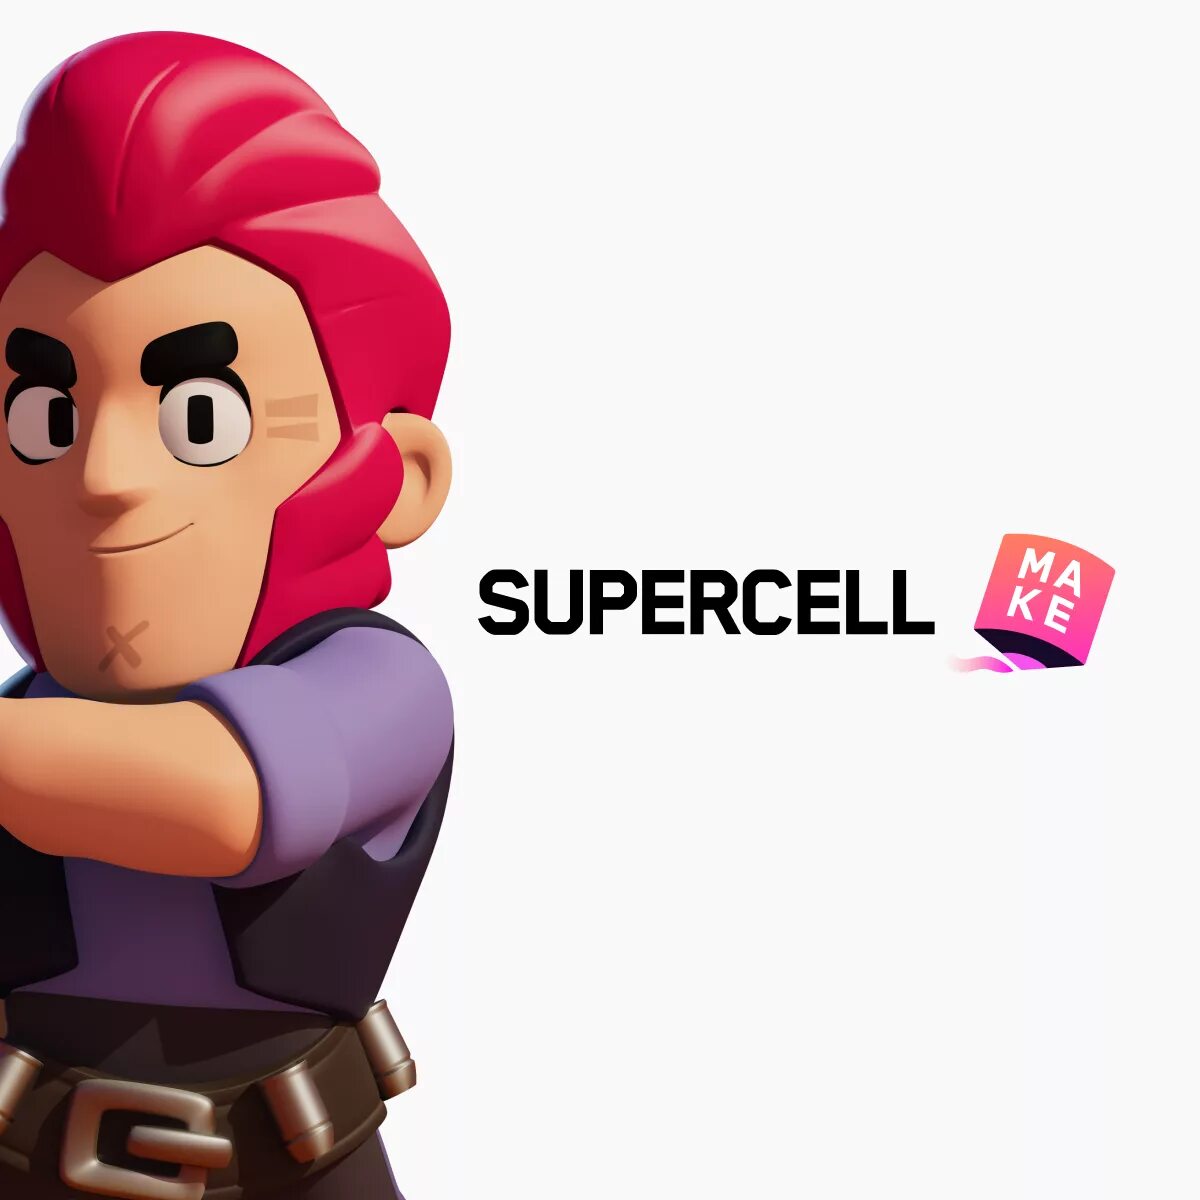 Мэйк суперселл. Скины суперсел маке. Суперселл БРАВЛ. Supercell make. Браво старс Supercell make.